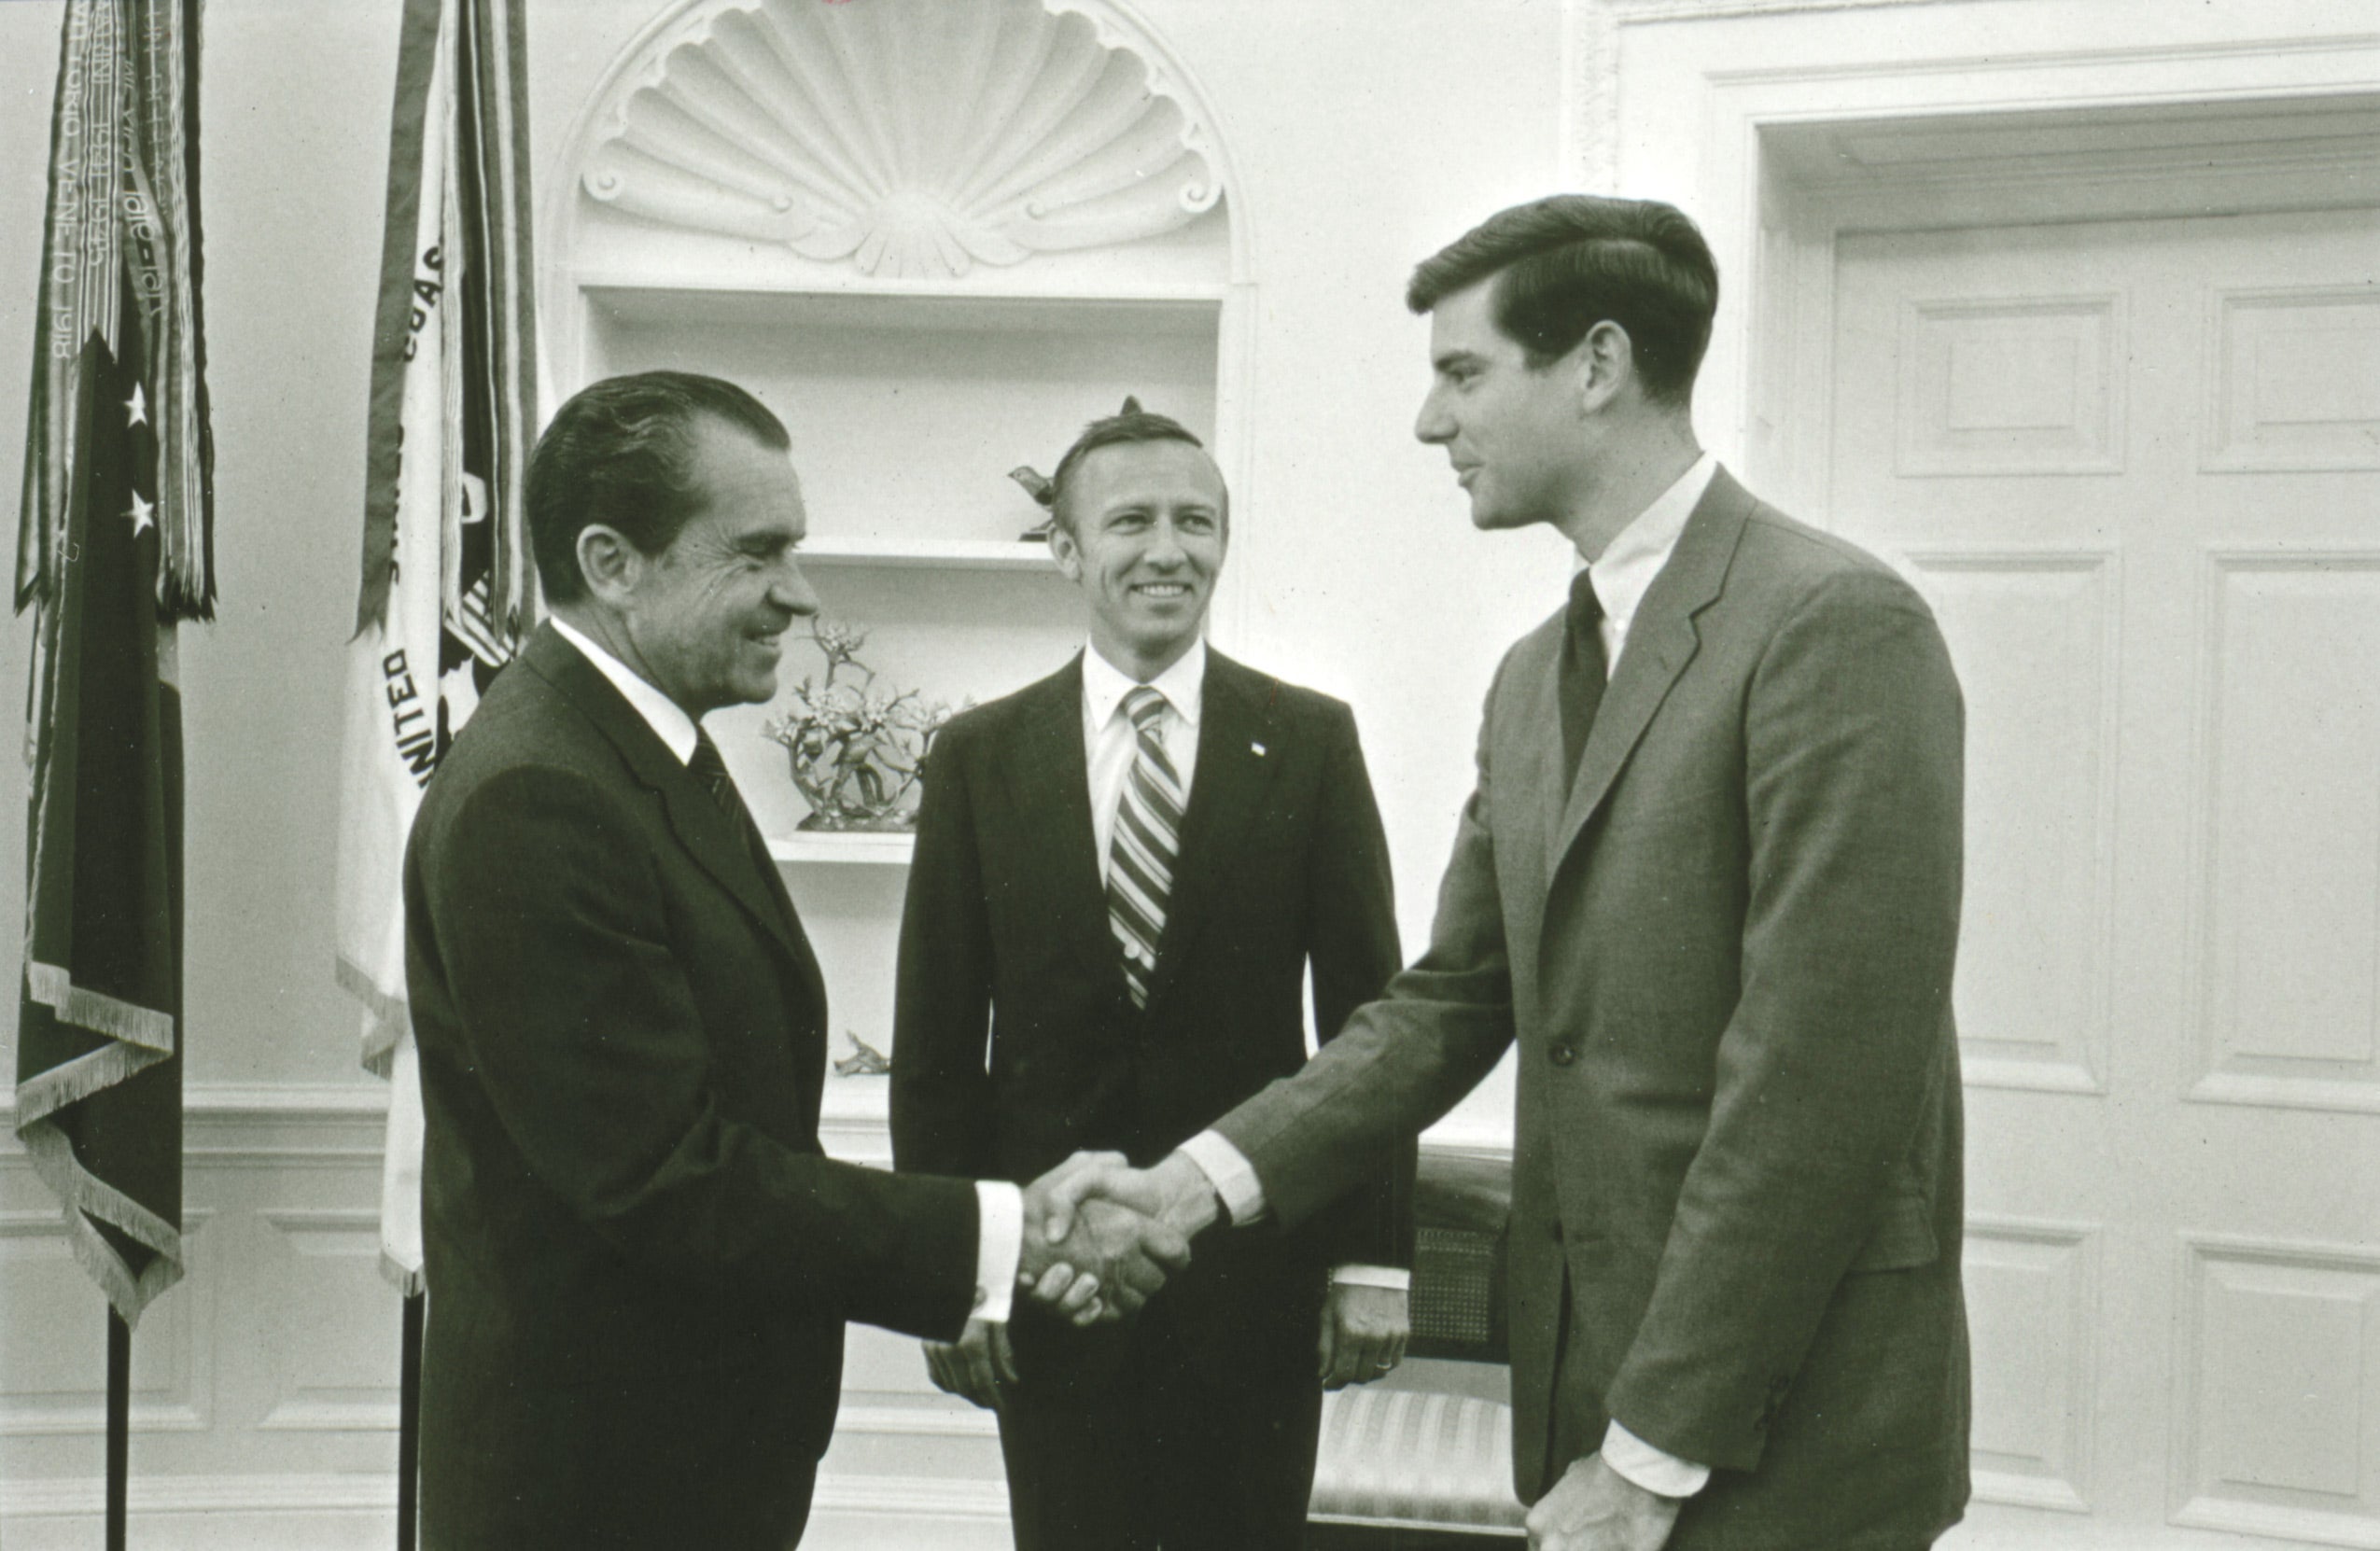 Shepardshaking hands with Nixon